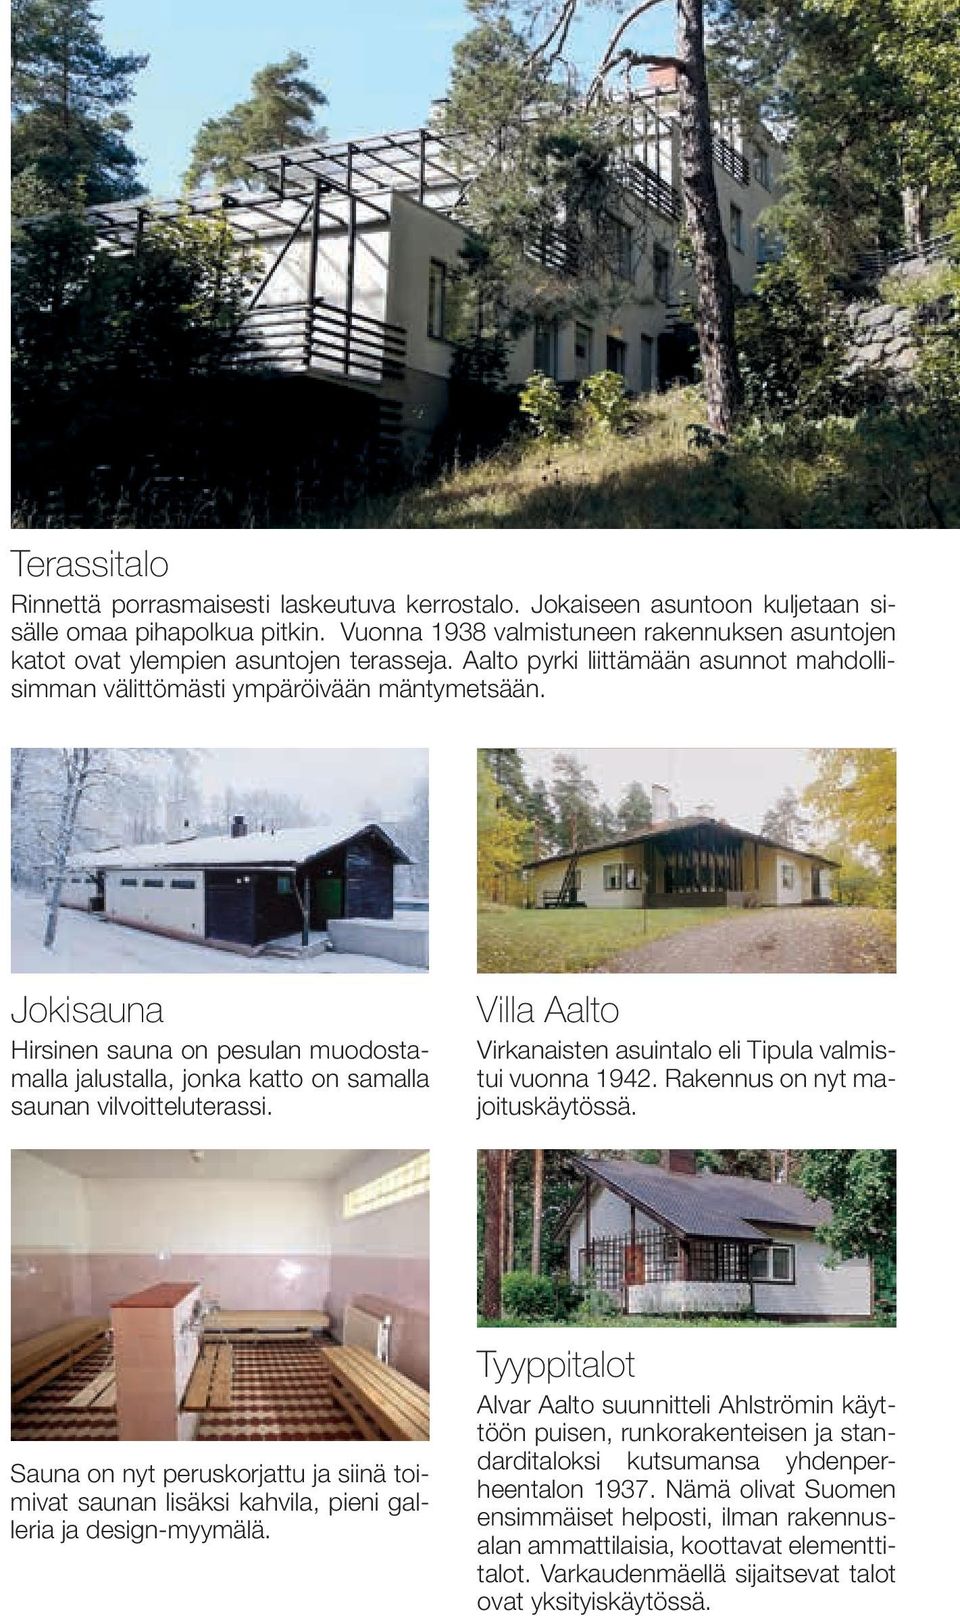 Jokisauna Hirsinen sauna on pesulan muodostamalla jalustalla, jonka katto on samalla saunan vilvoitteluterassi. Villa Aalto Virkanaisten asuintalo eli Tipula valmistui vuonna 1942.